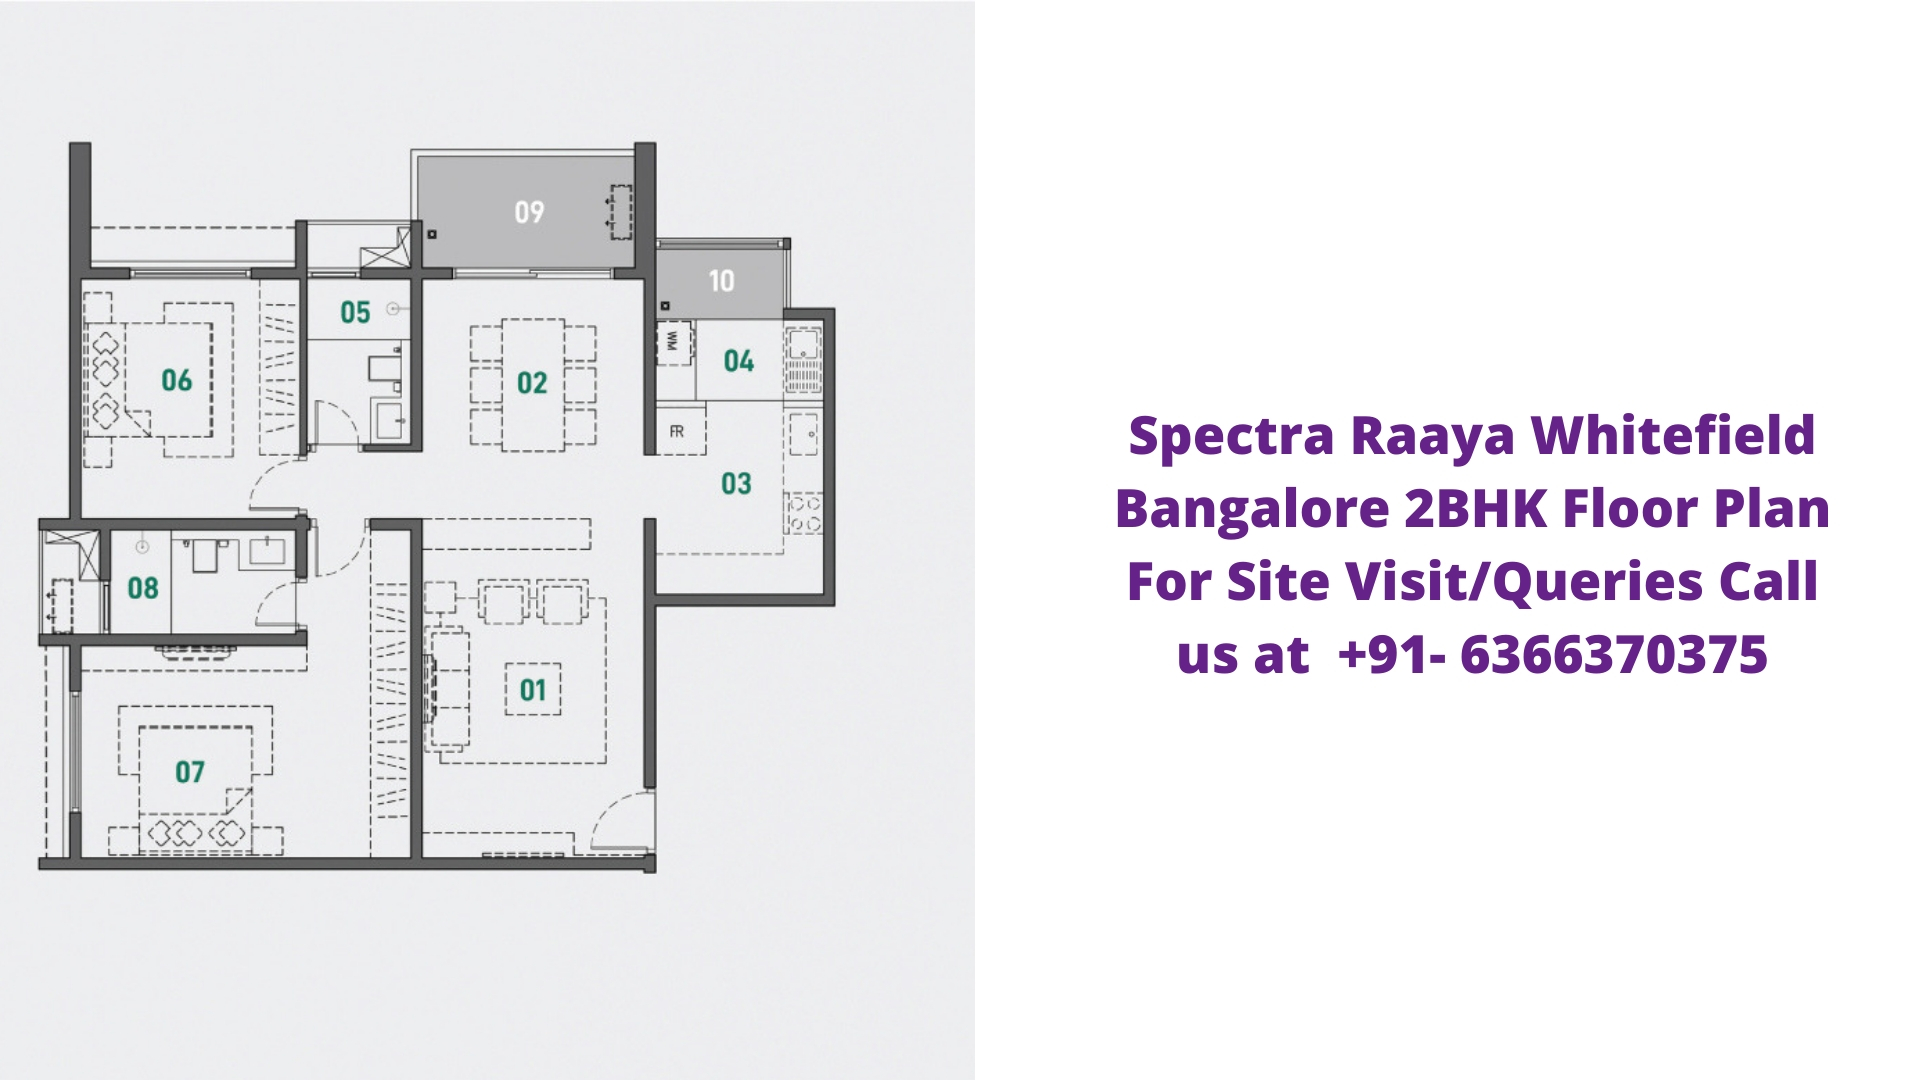 Spectra Raaya Whitefield Bangalore 2bhk Floor Plan